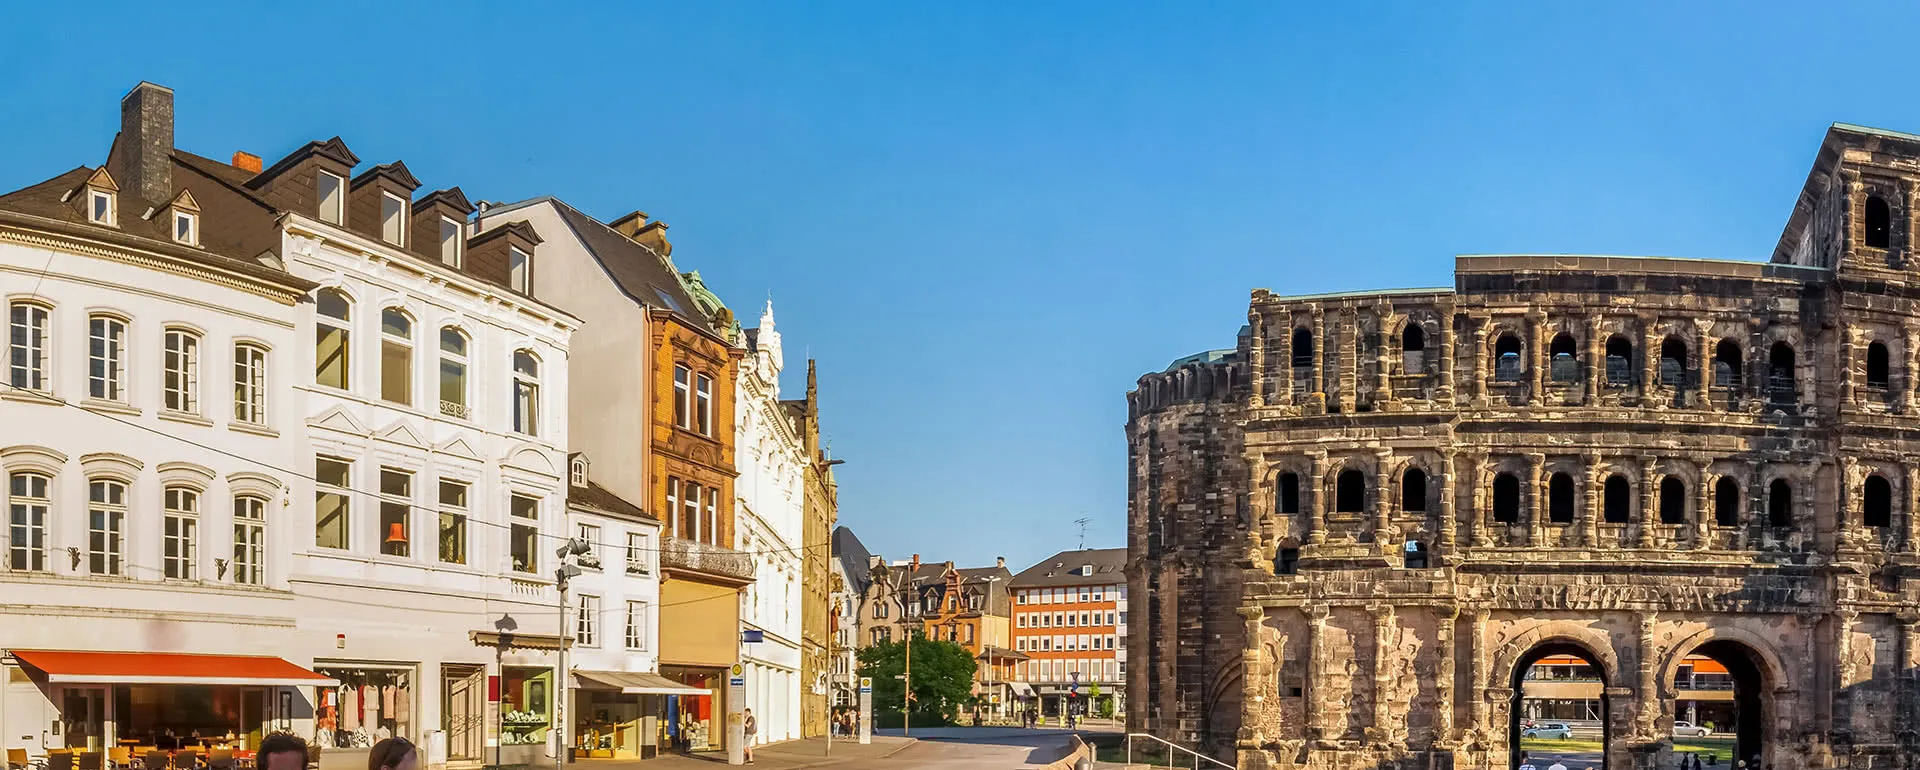 Trier - das Reiseziel mit Jugendherbergen